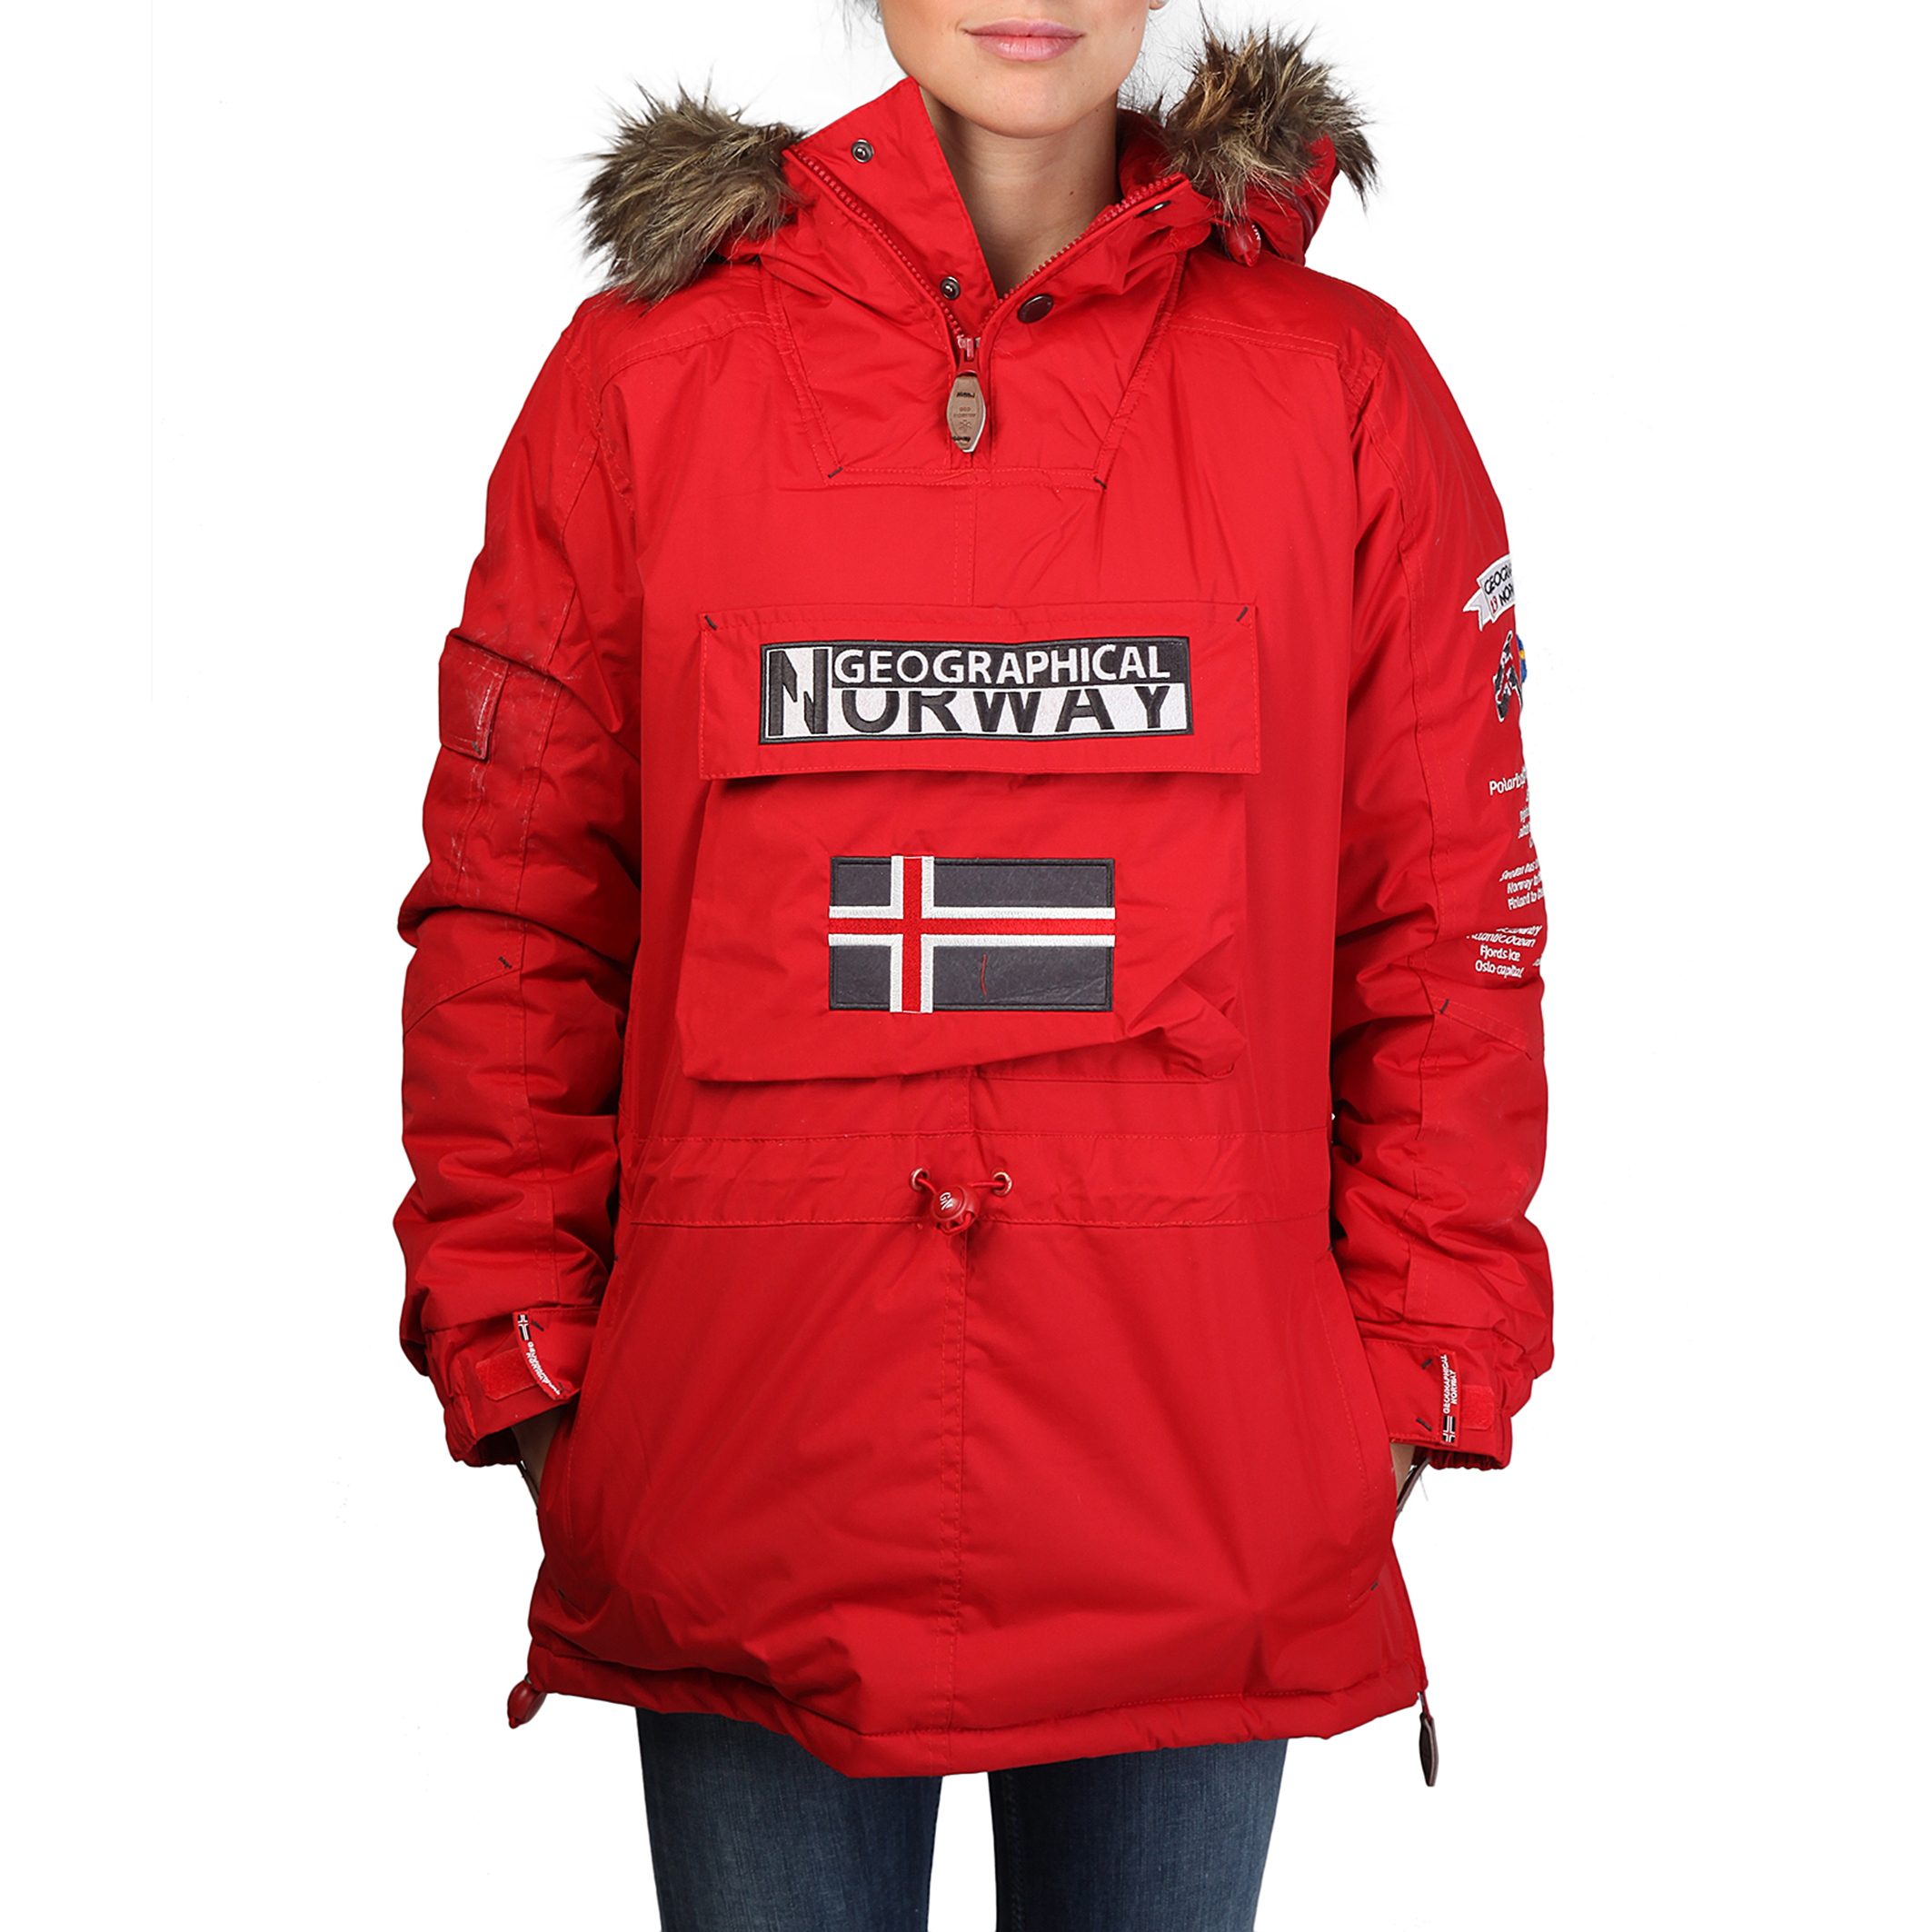 Quiero Canguro - Geographical Norway - Tienda Oficial